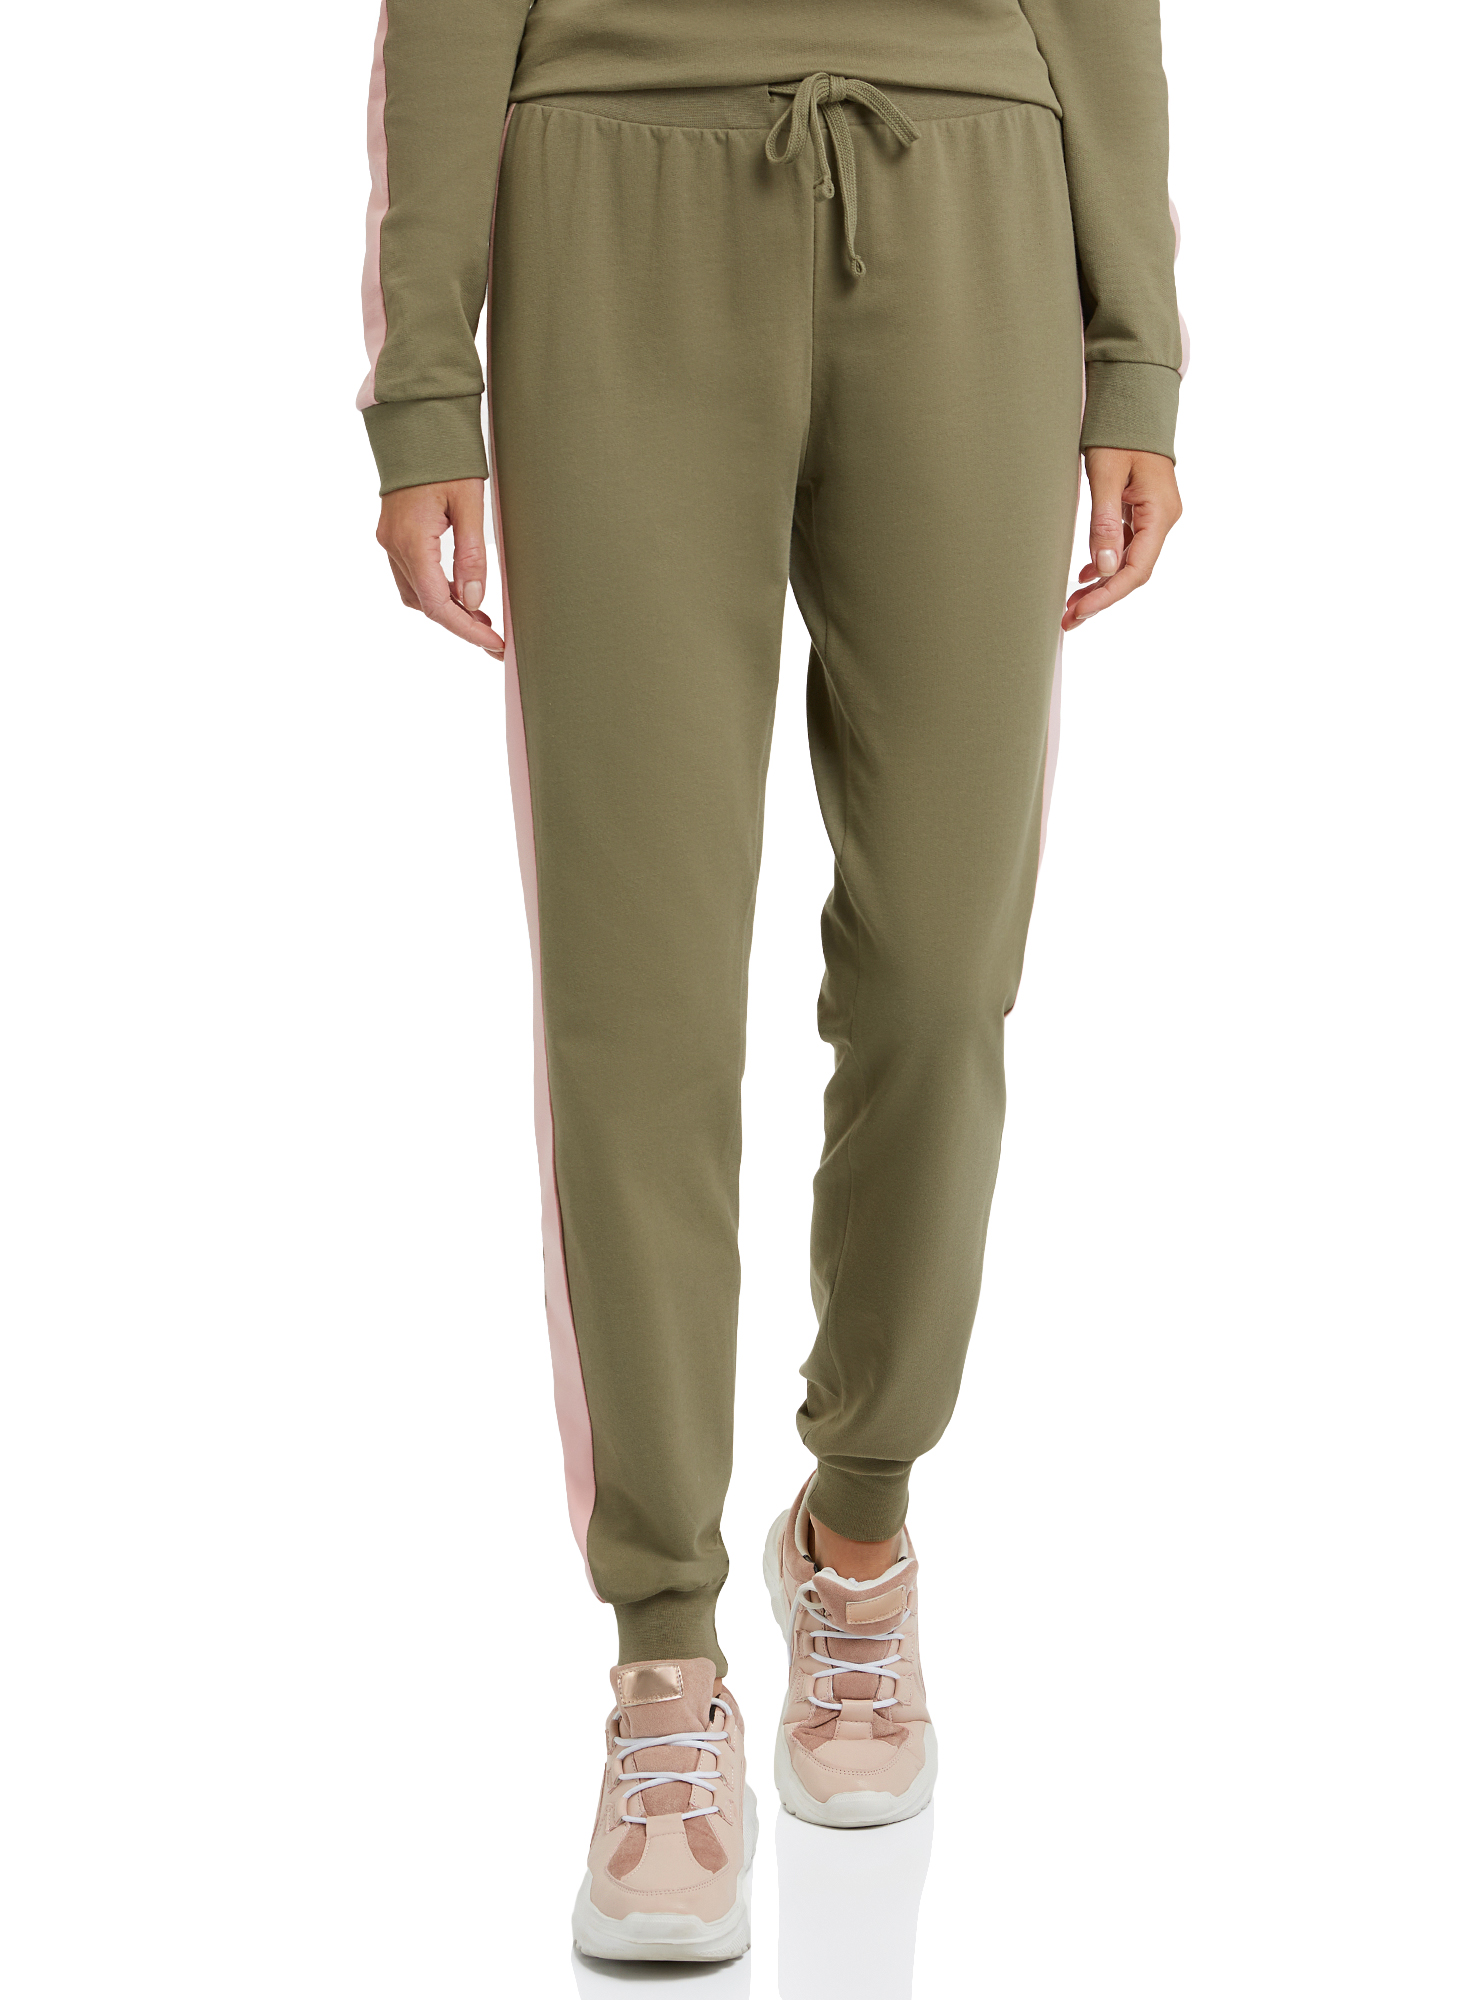 Спортивные брюки женские oodji 16701097B зеленые L